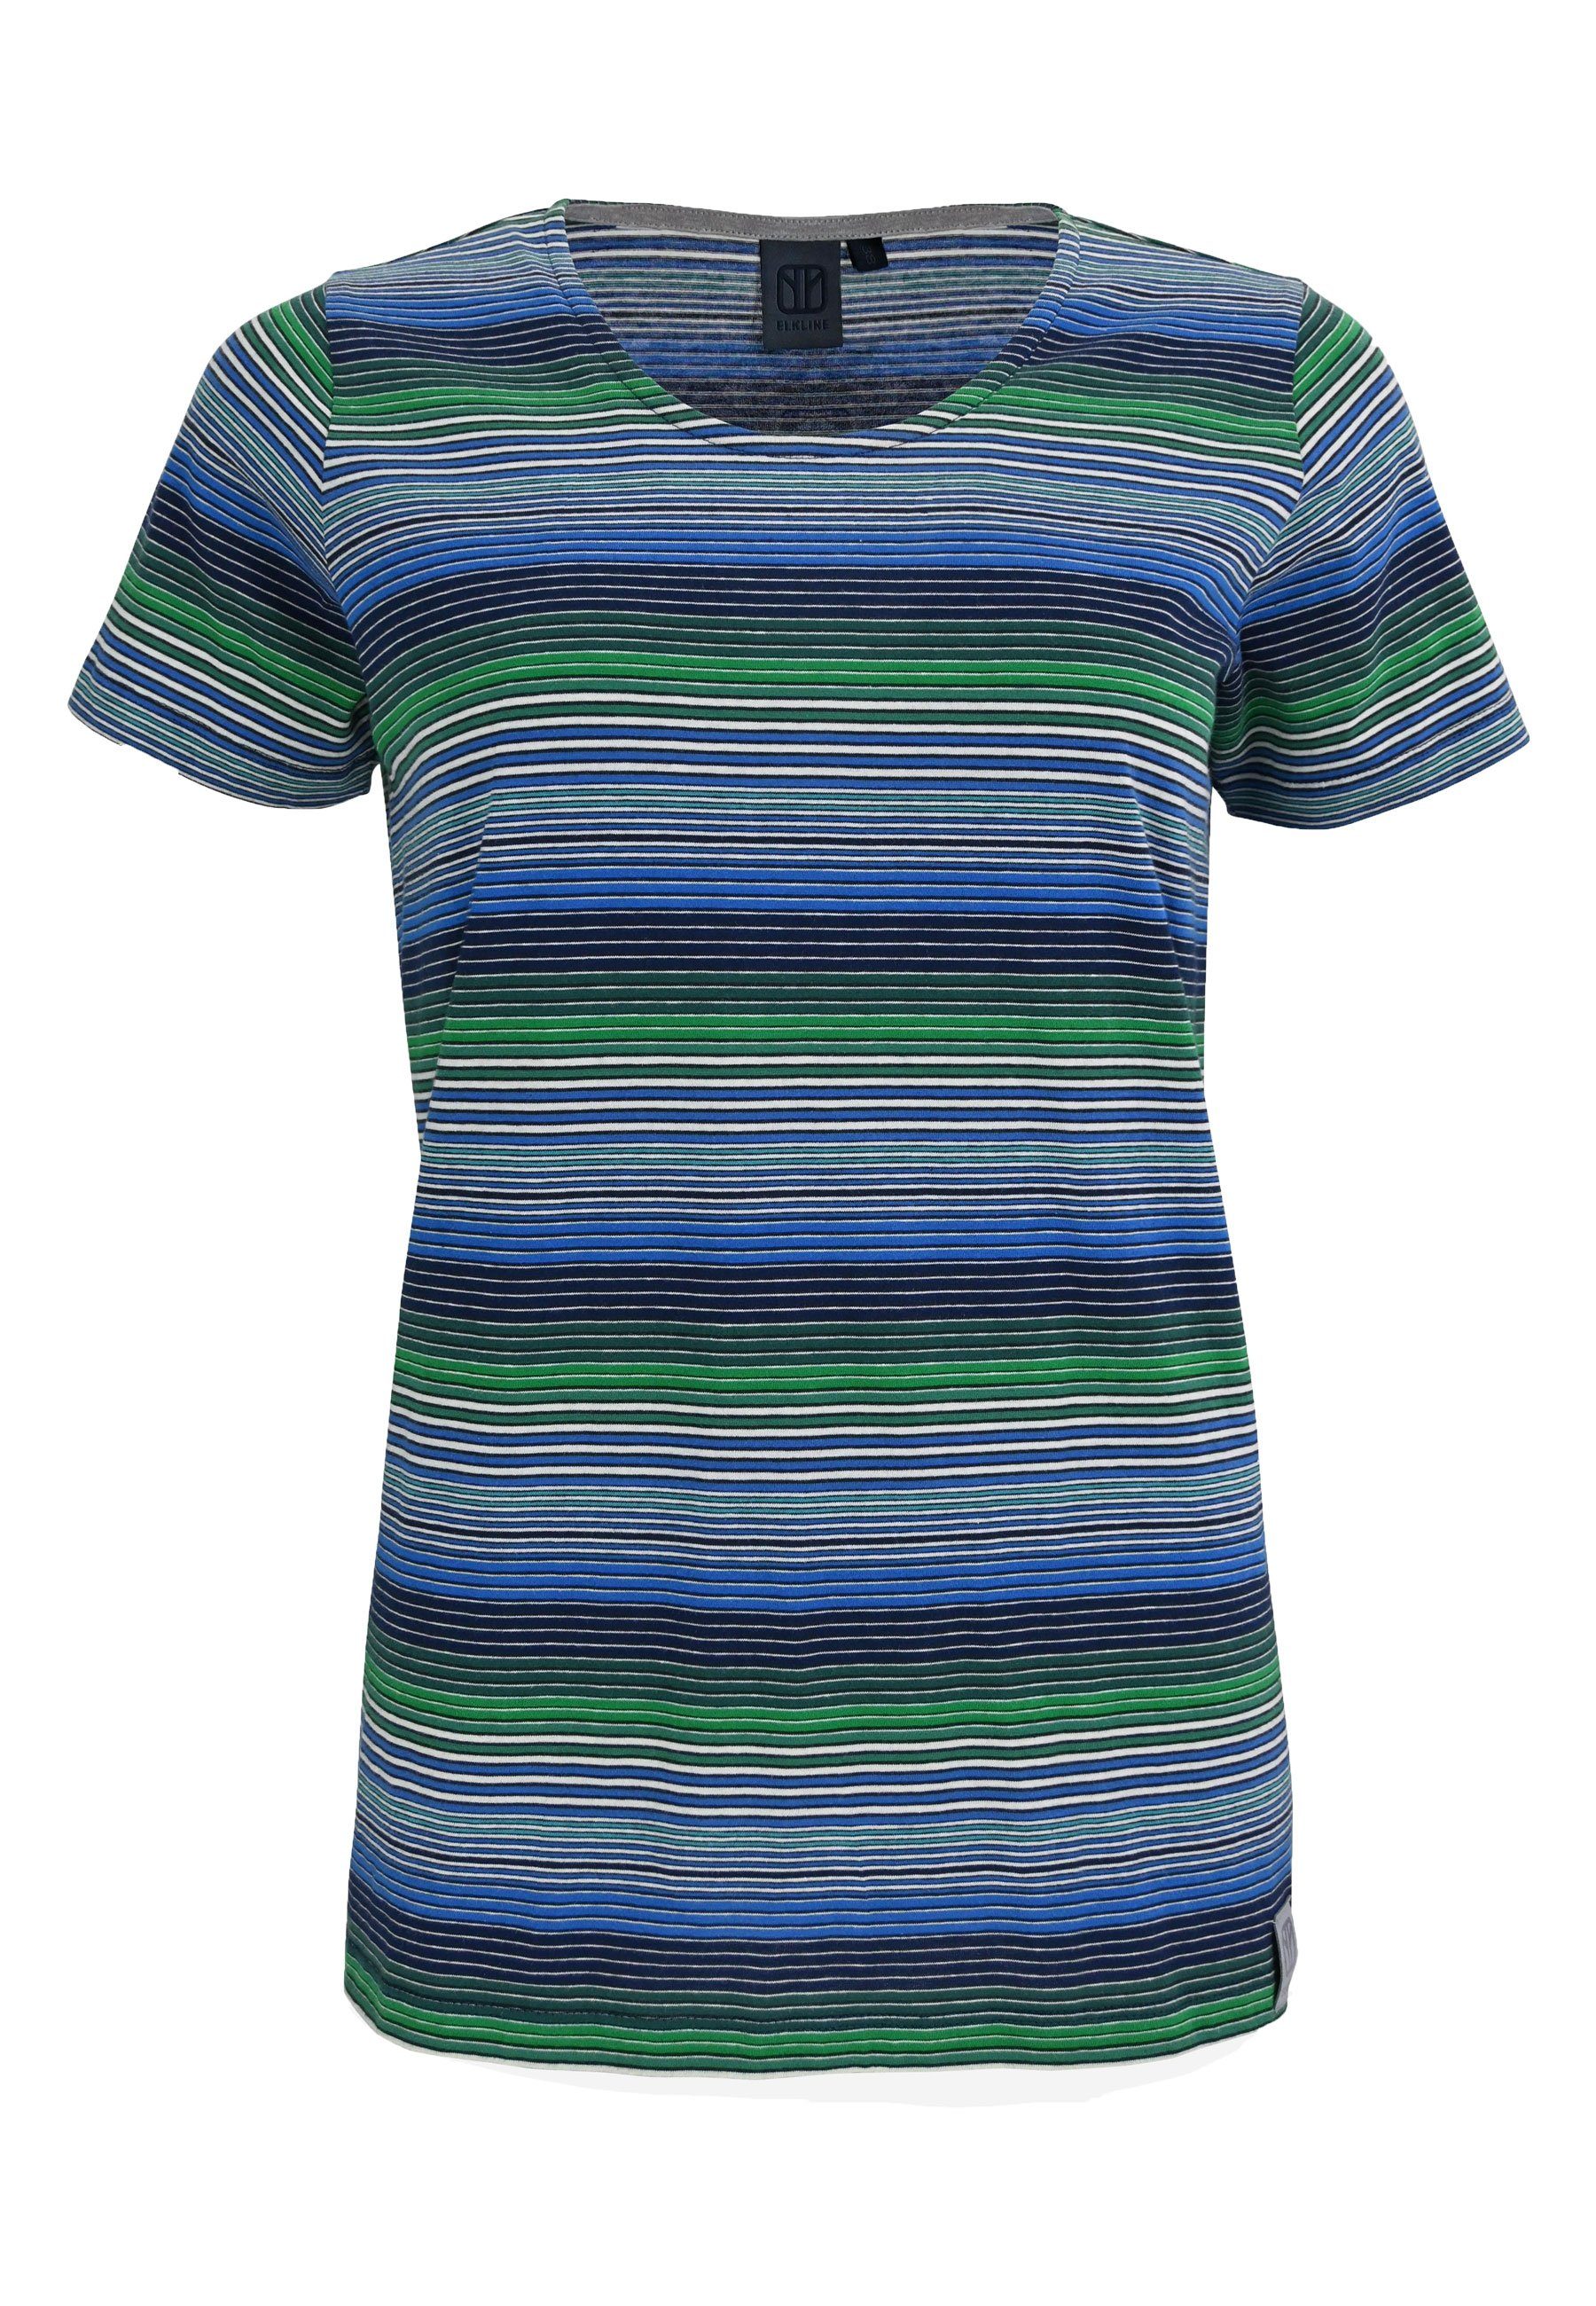 Elkline T-Shirt Candystriped bunt gestreift blue - green | T-Shirts